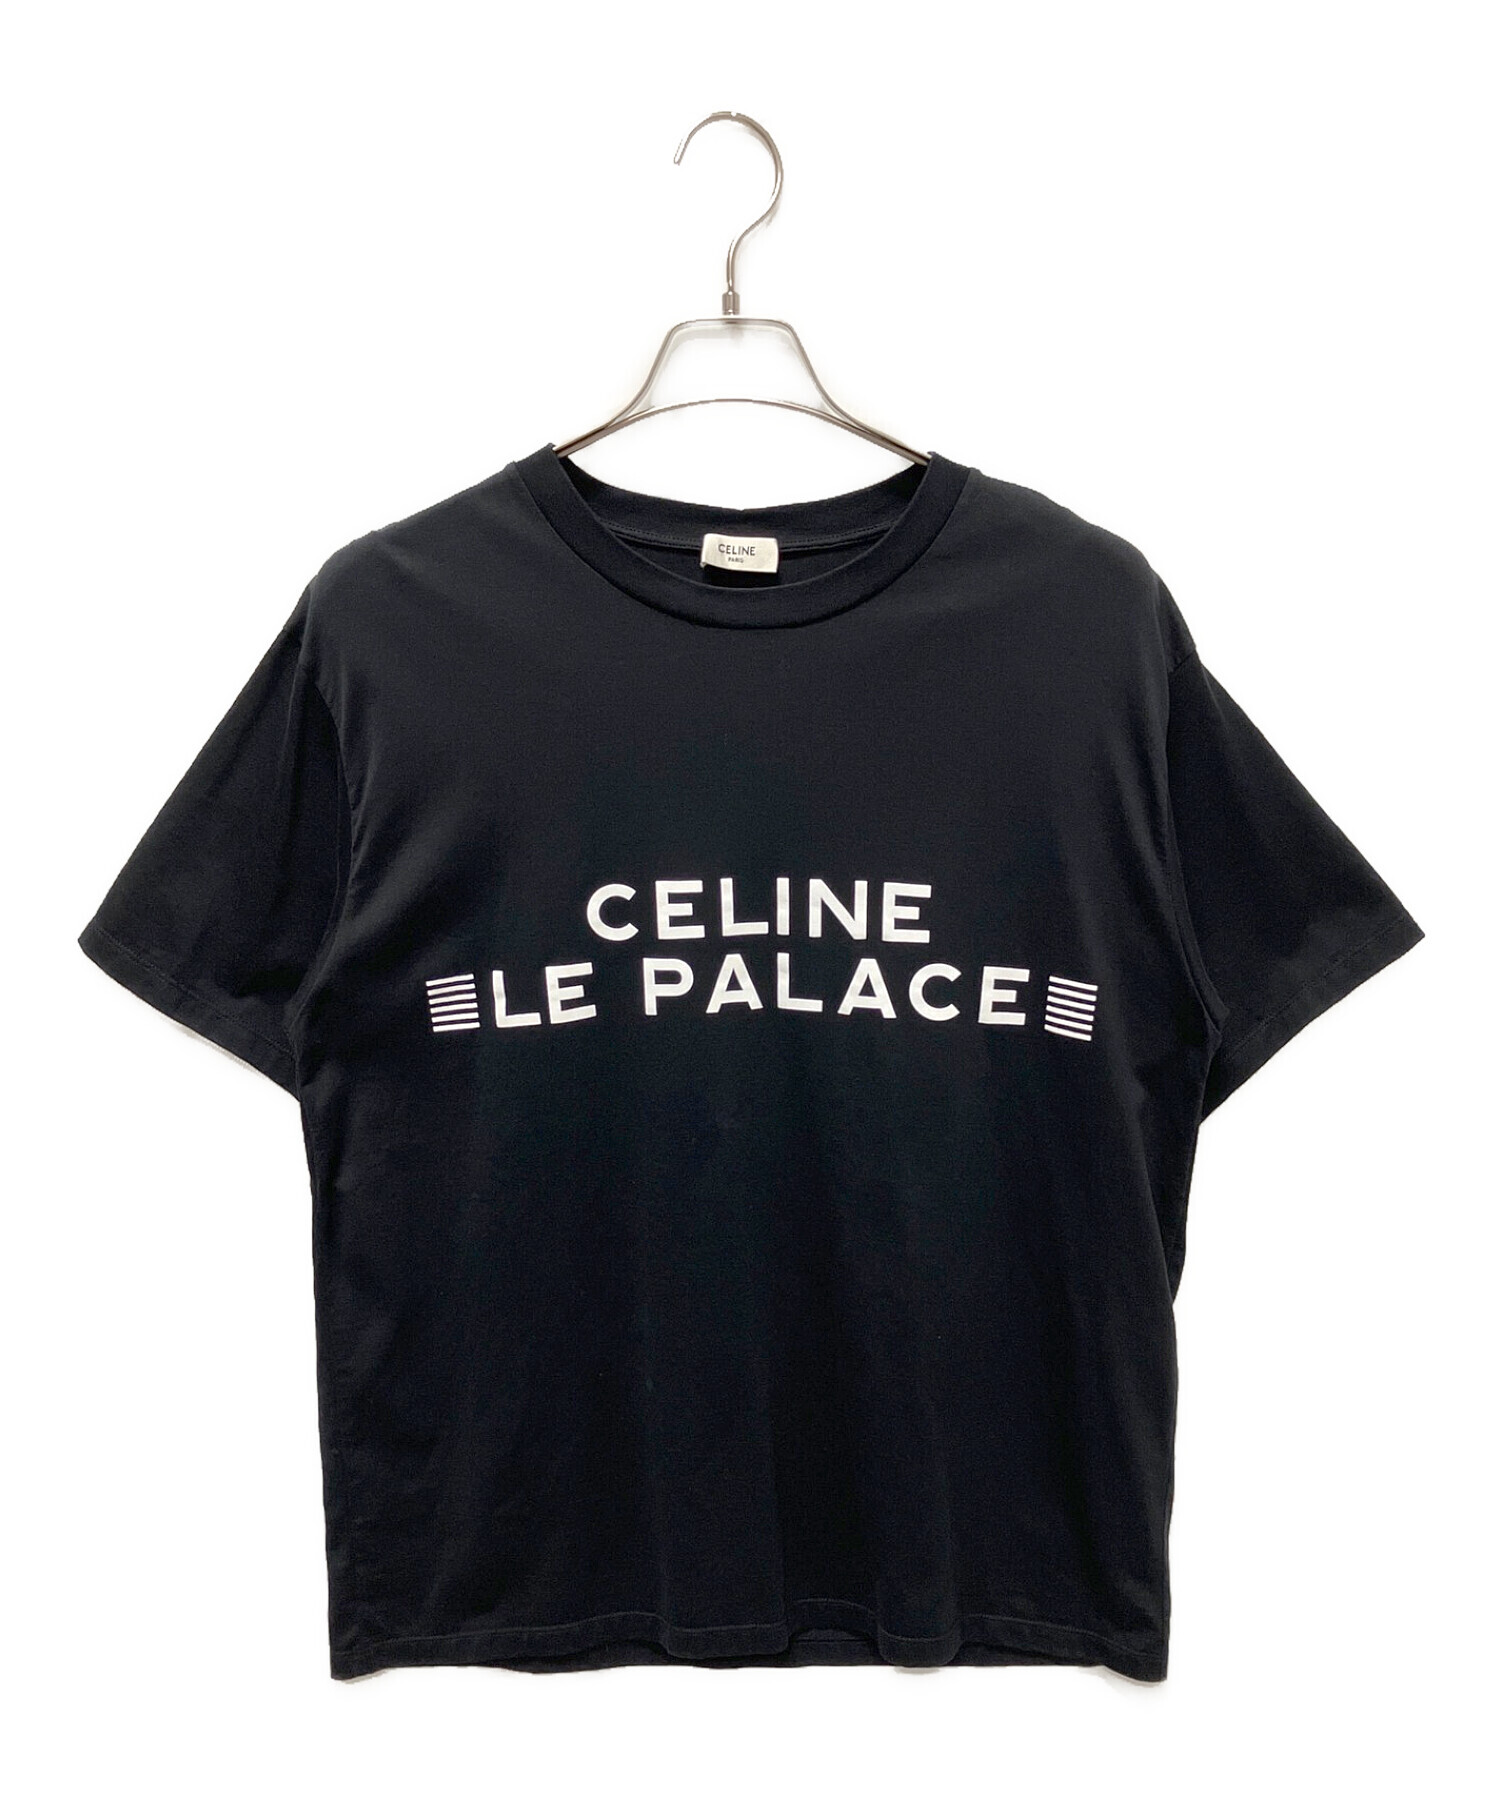 CELINE (セリーヌ) LE PALACE ロゴTシャツ ブラック サイズ:S